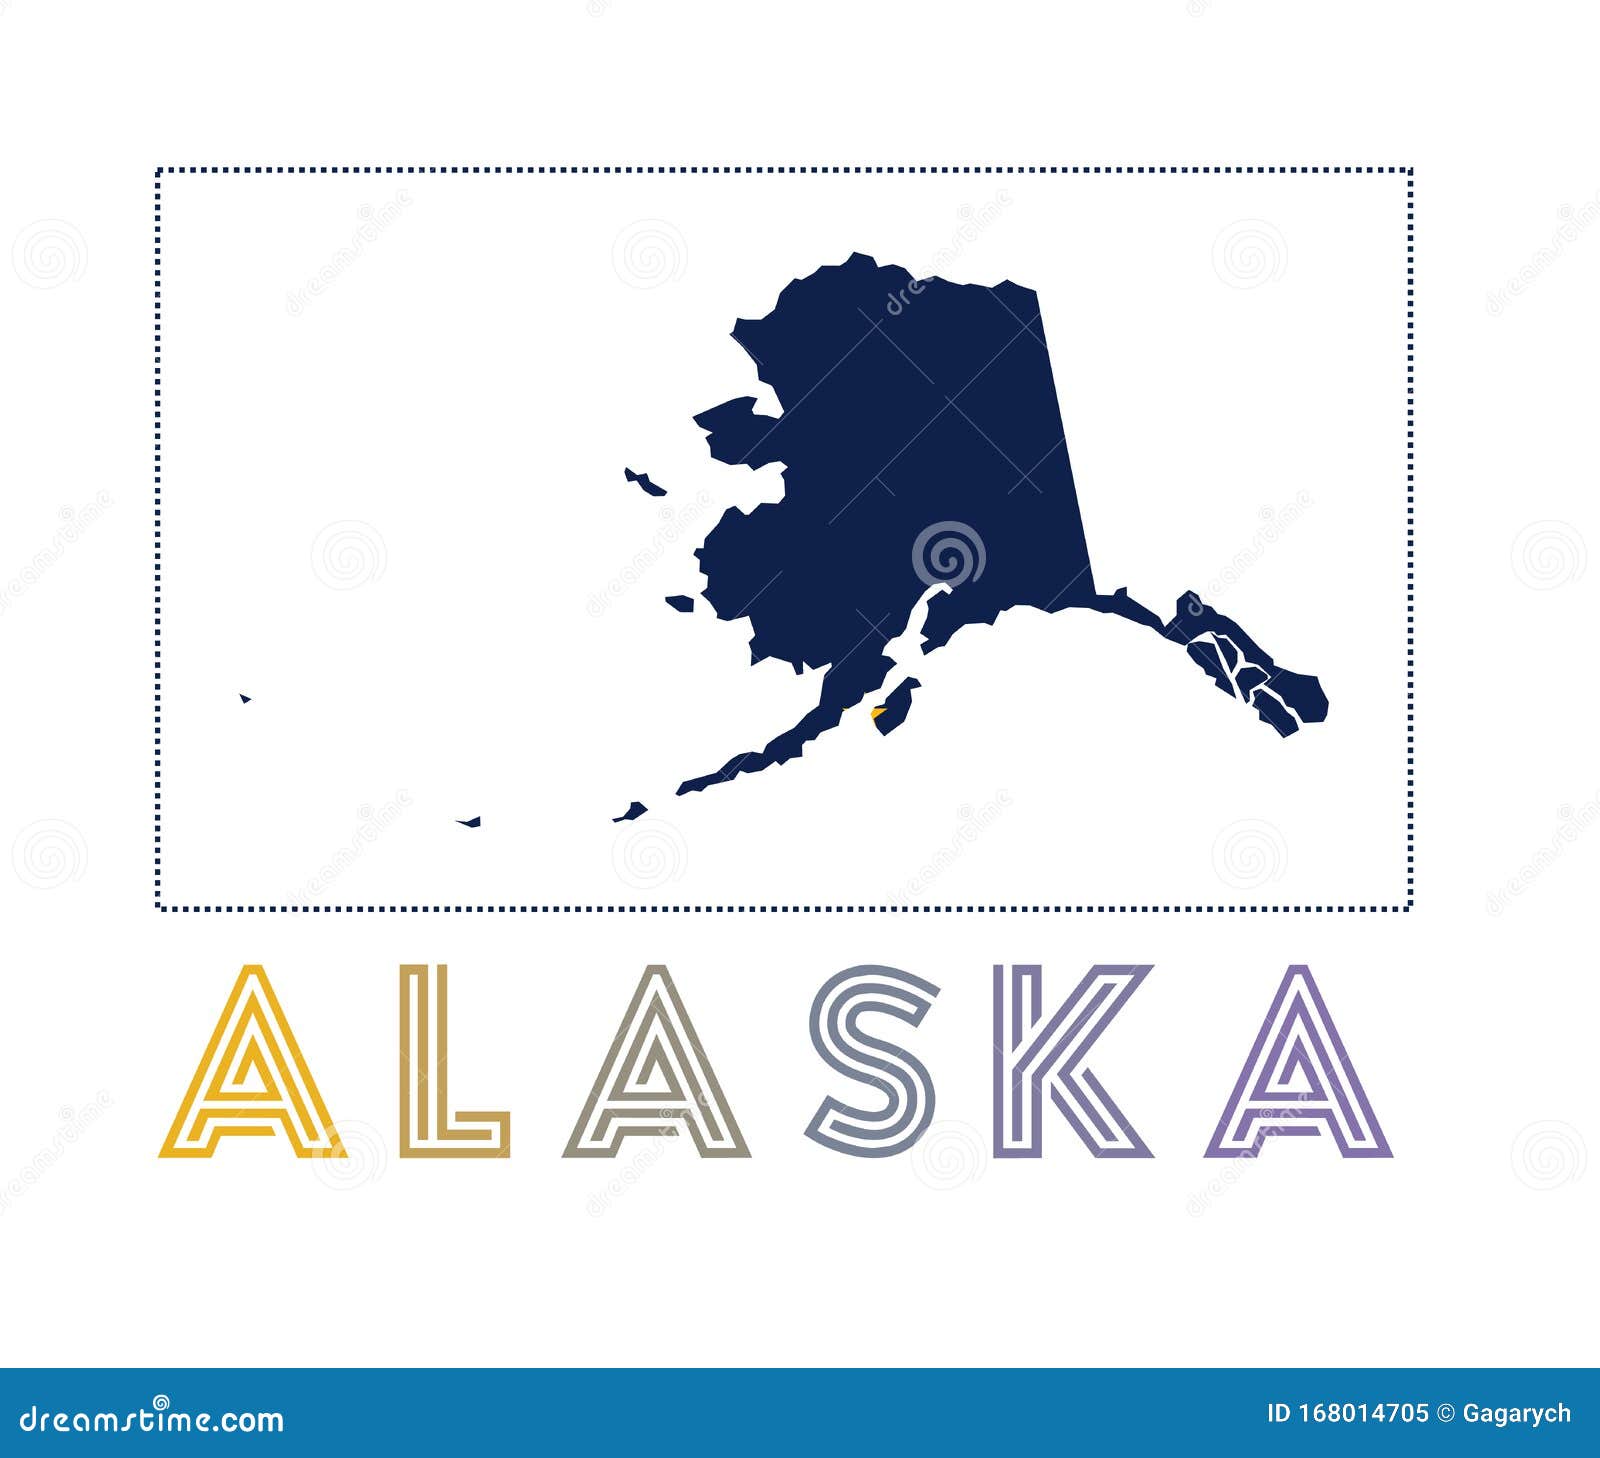 Alaska Logo Map Of Alaska With Us State Name And Stock Vector